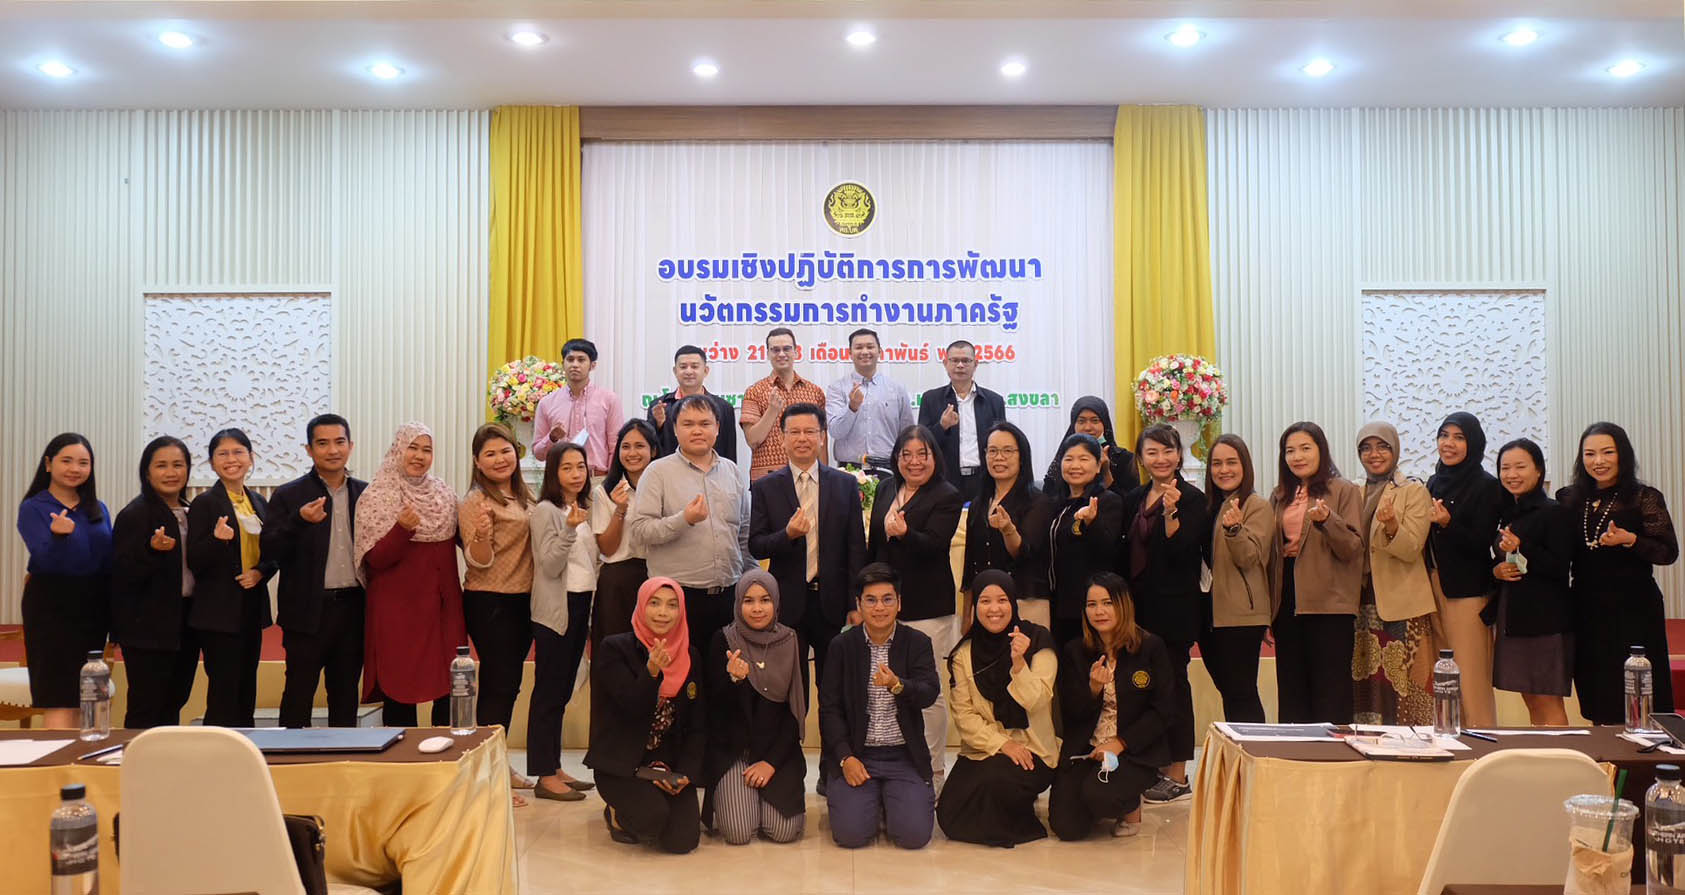 ศอ.บต. จัดอบรมเชิงปฏิบัติการการพัฒนา นวัตกรรมการทำงานภาครัฐ พัฒนาศักยภาพเพื่อก้าวสู่ยุค Thailand 4.0